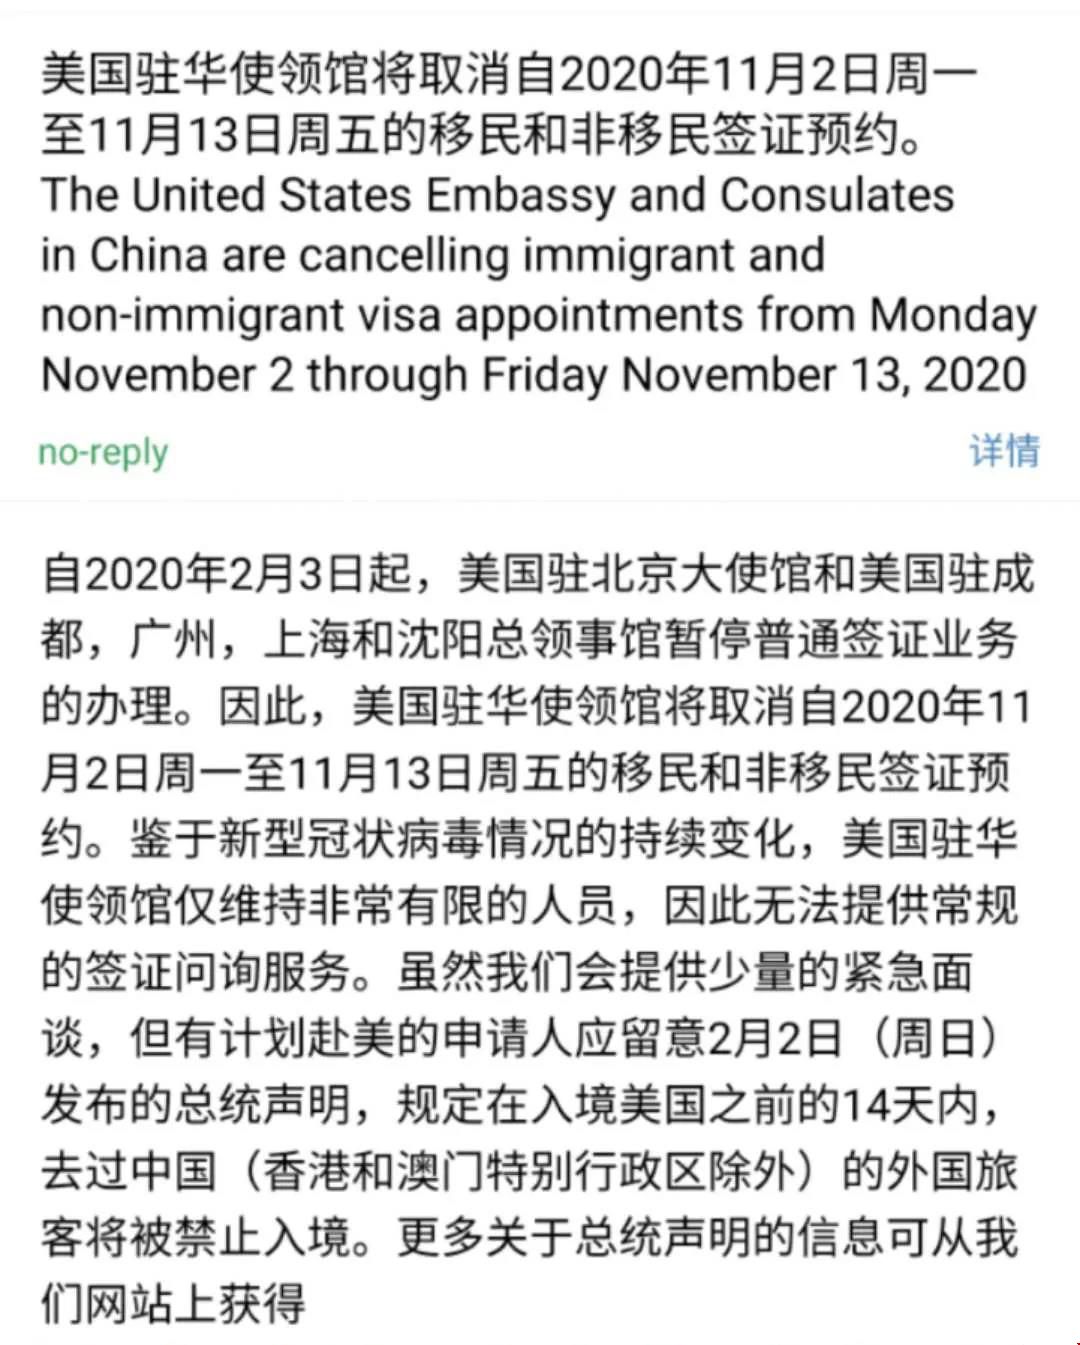 美国驻华使馆取消11月13日之前所有面签